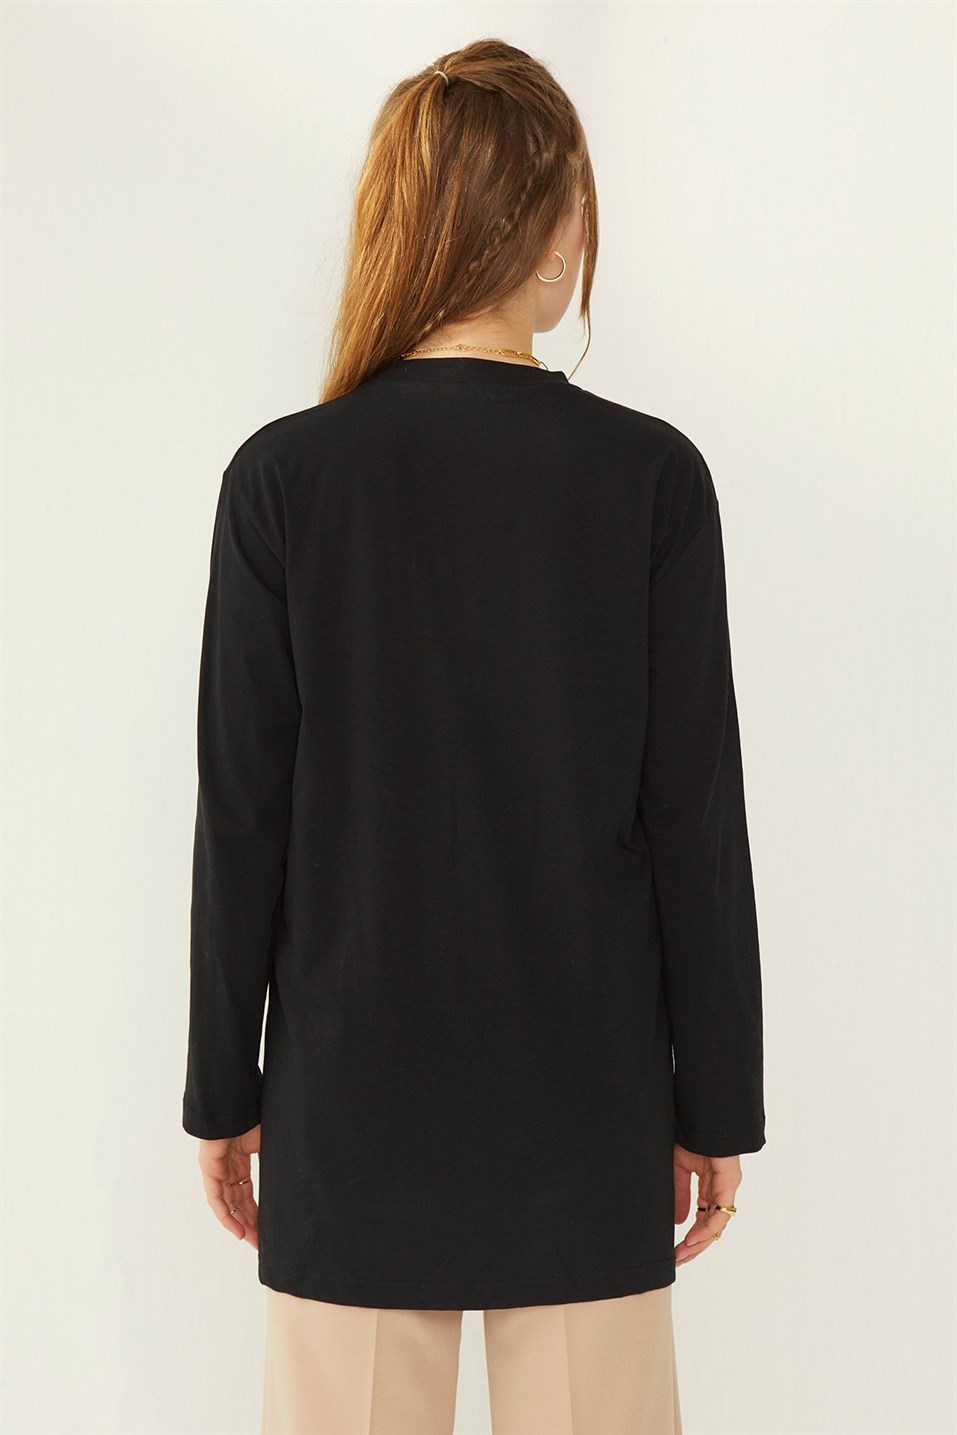 Siyah Uzun Pamuklu Sweatshirt